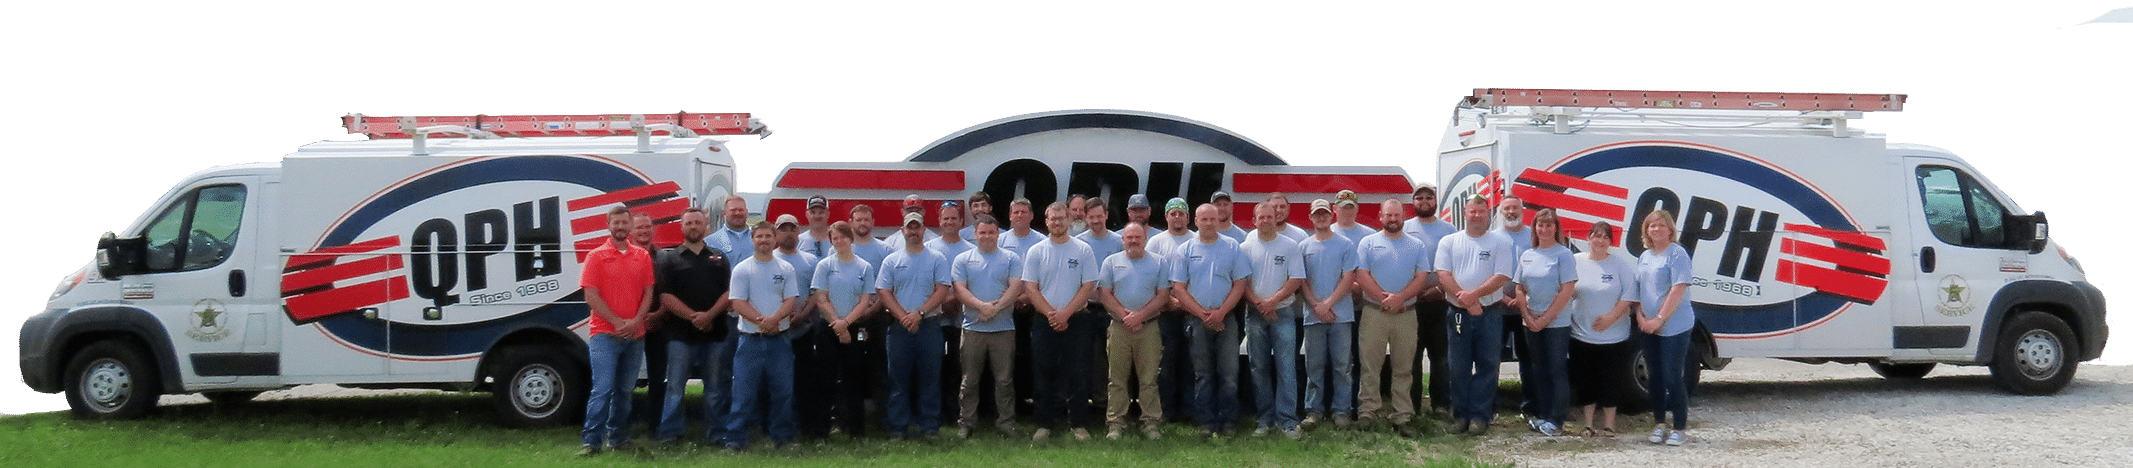 QPH Greensburg Team Photo